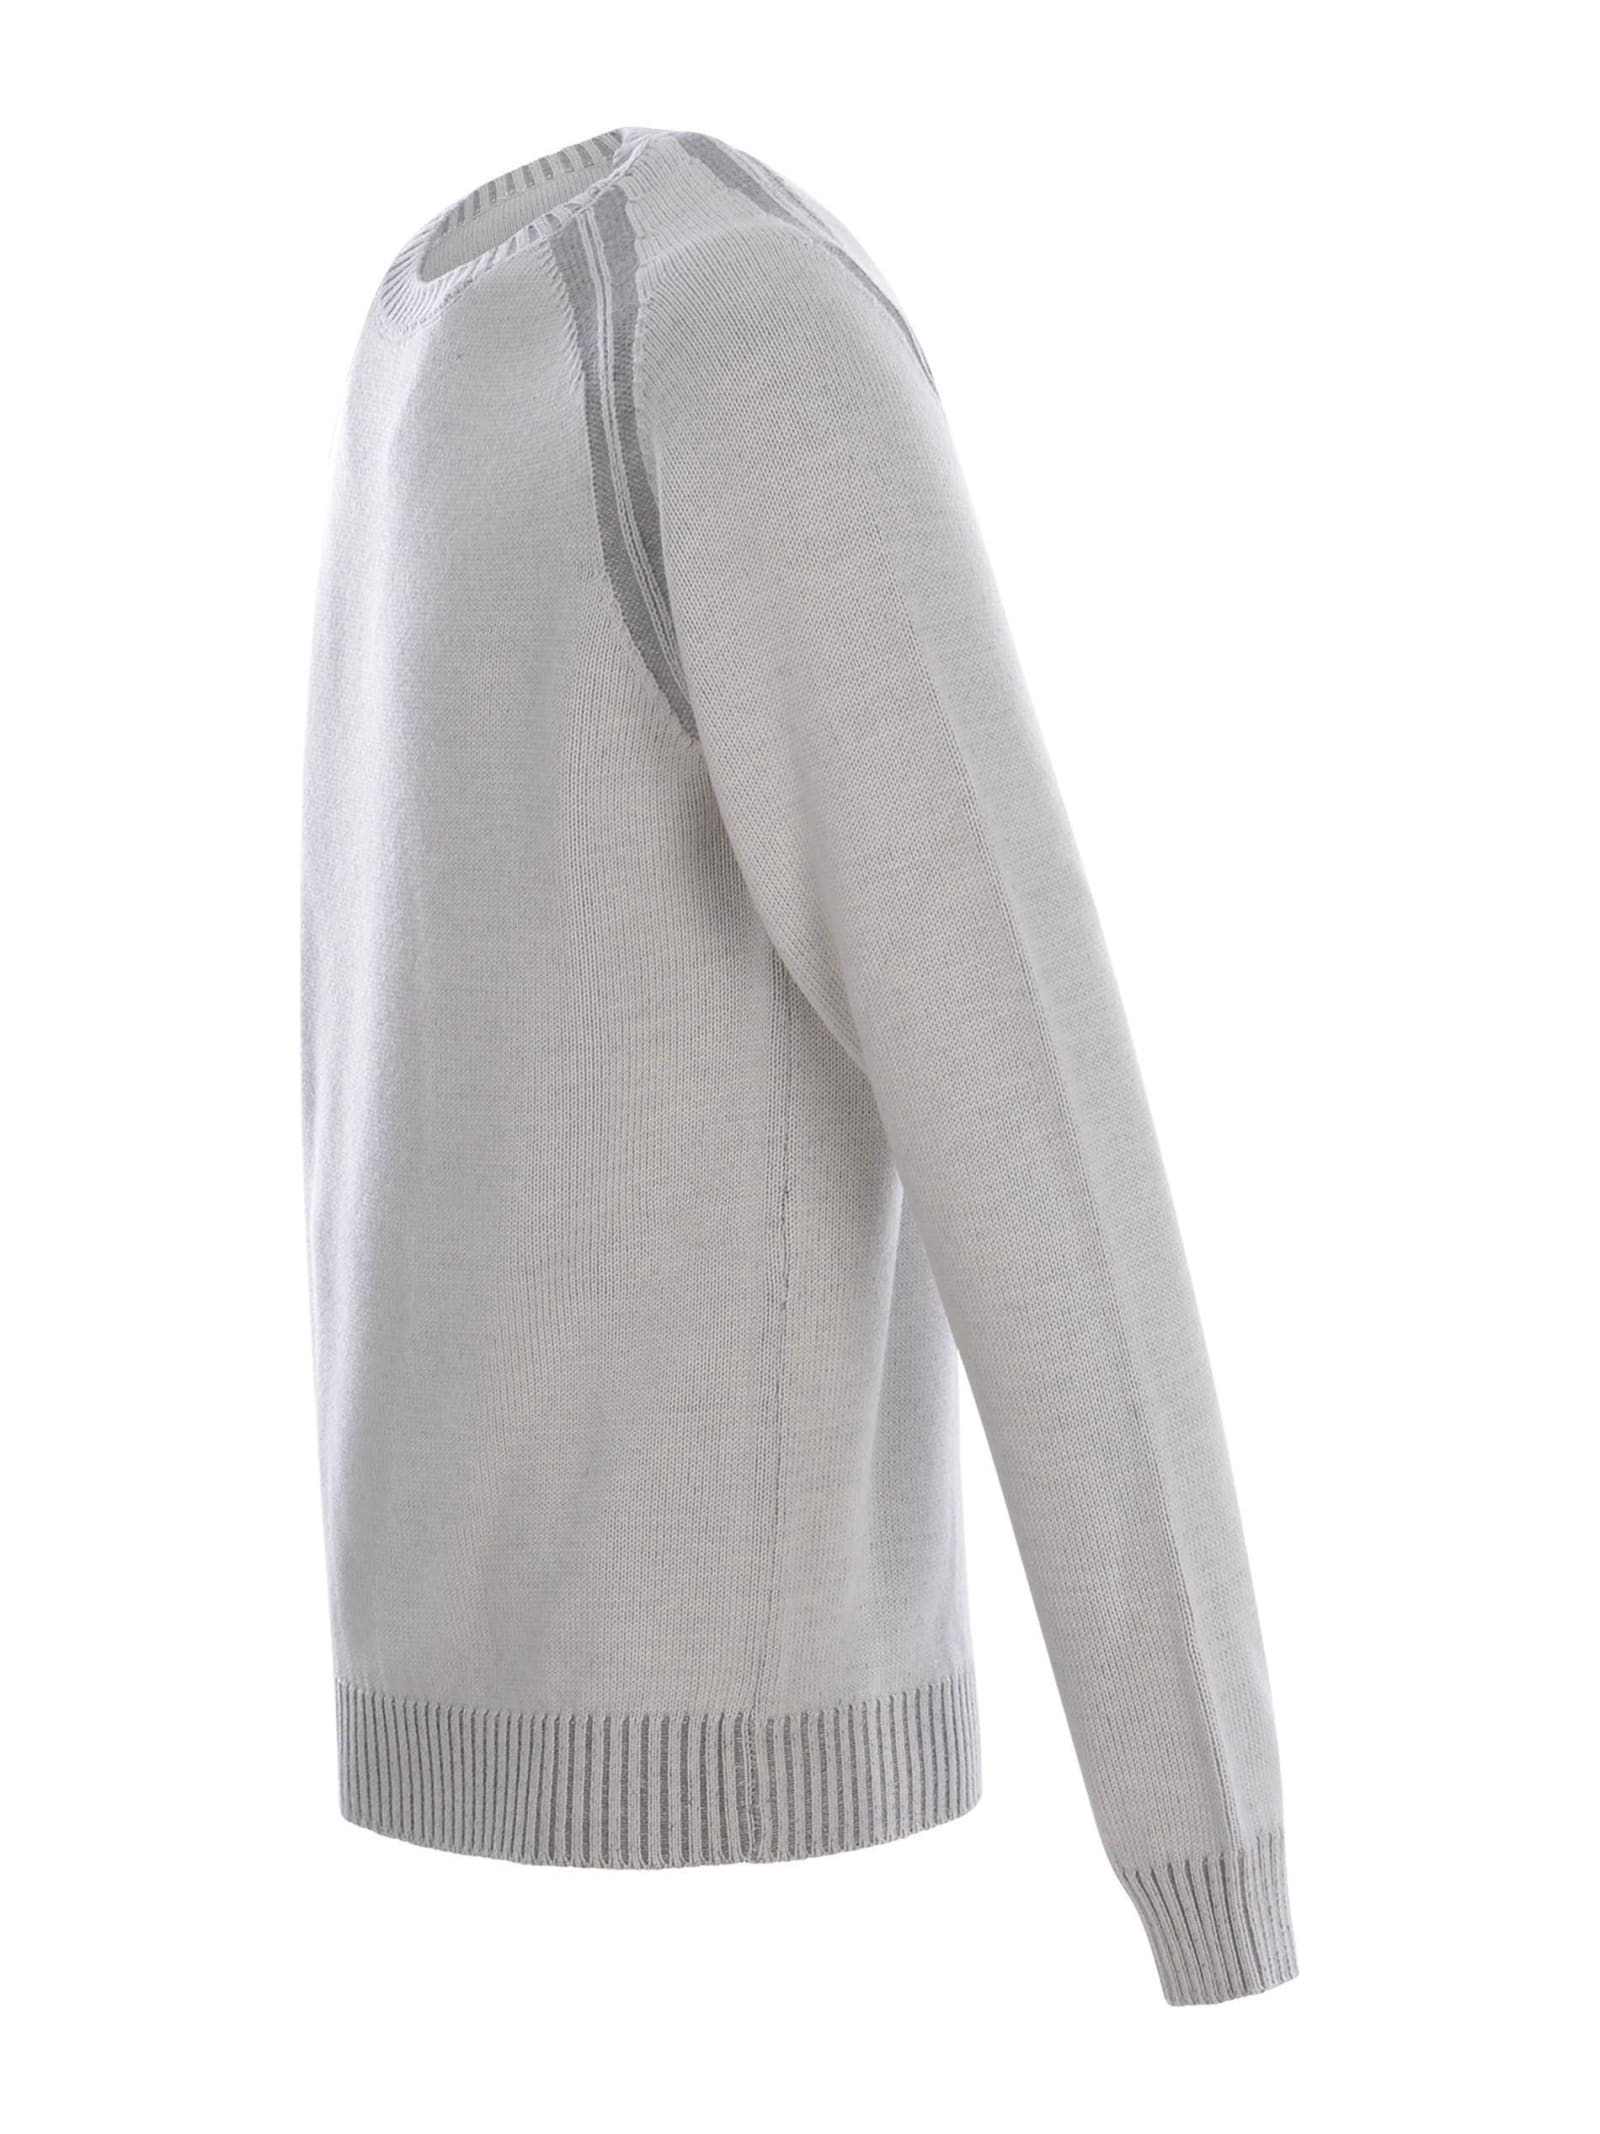 Shop Jeordie's Sweater Jeordies In Merino Wool In Grigio